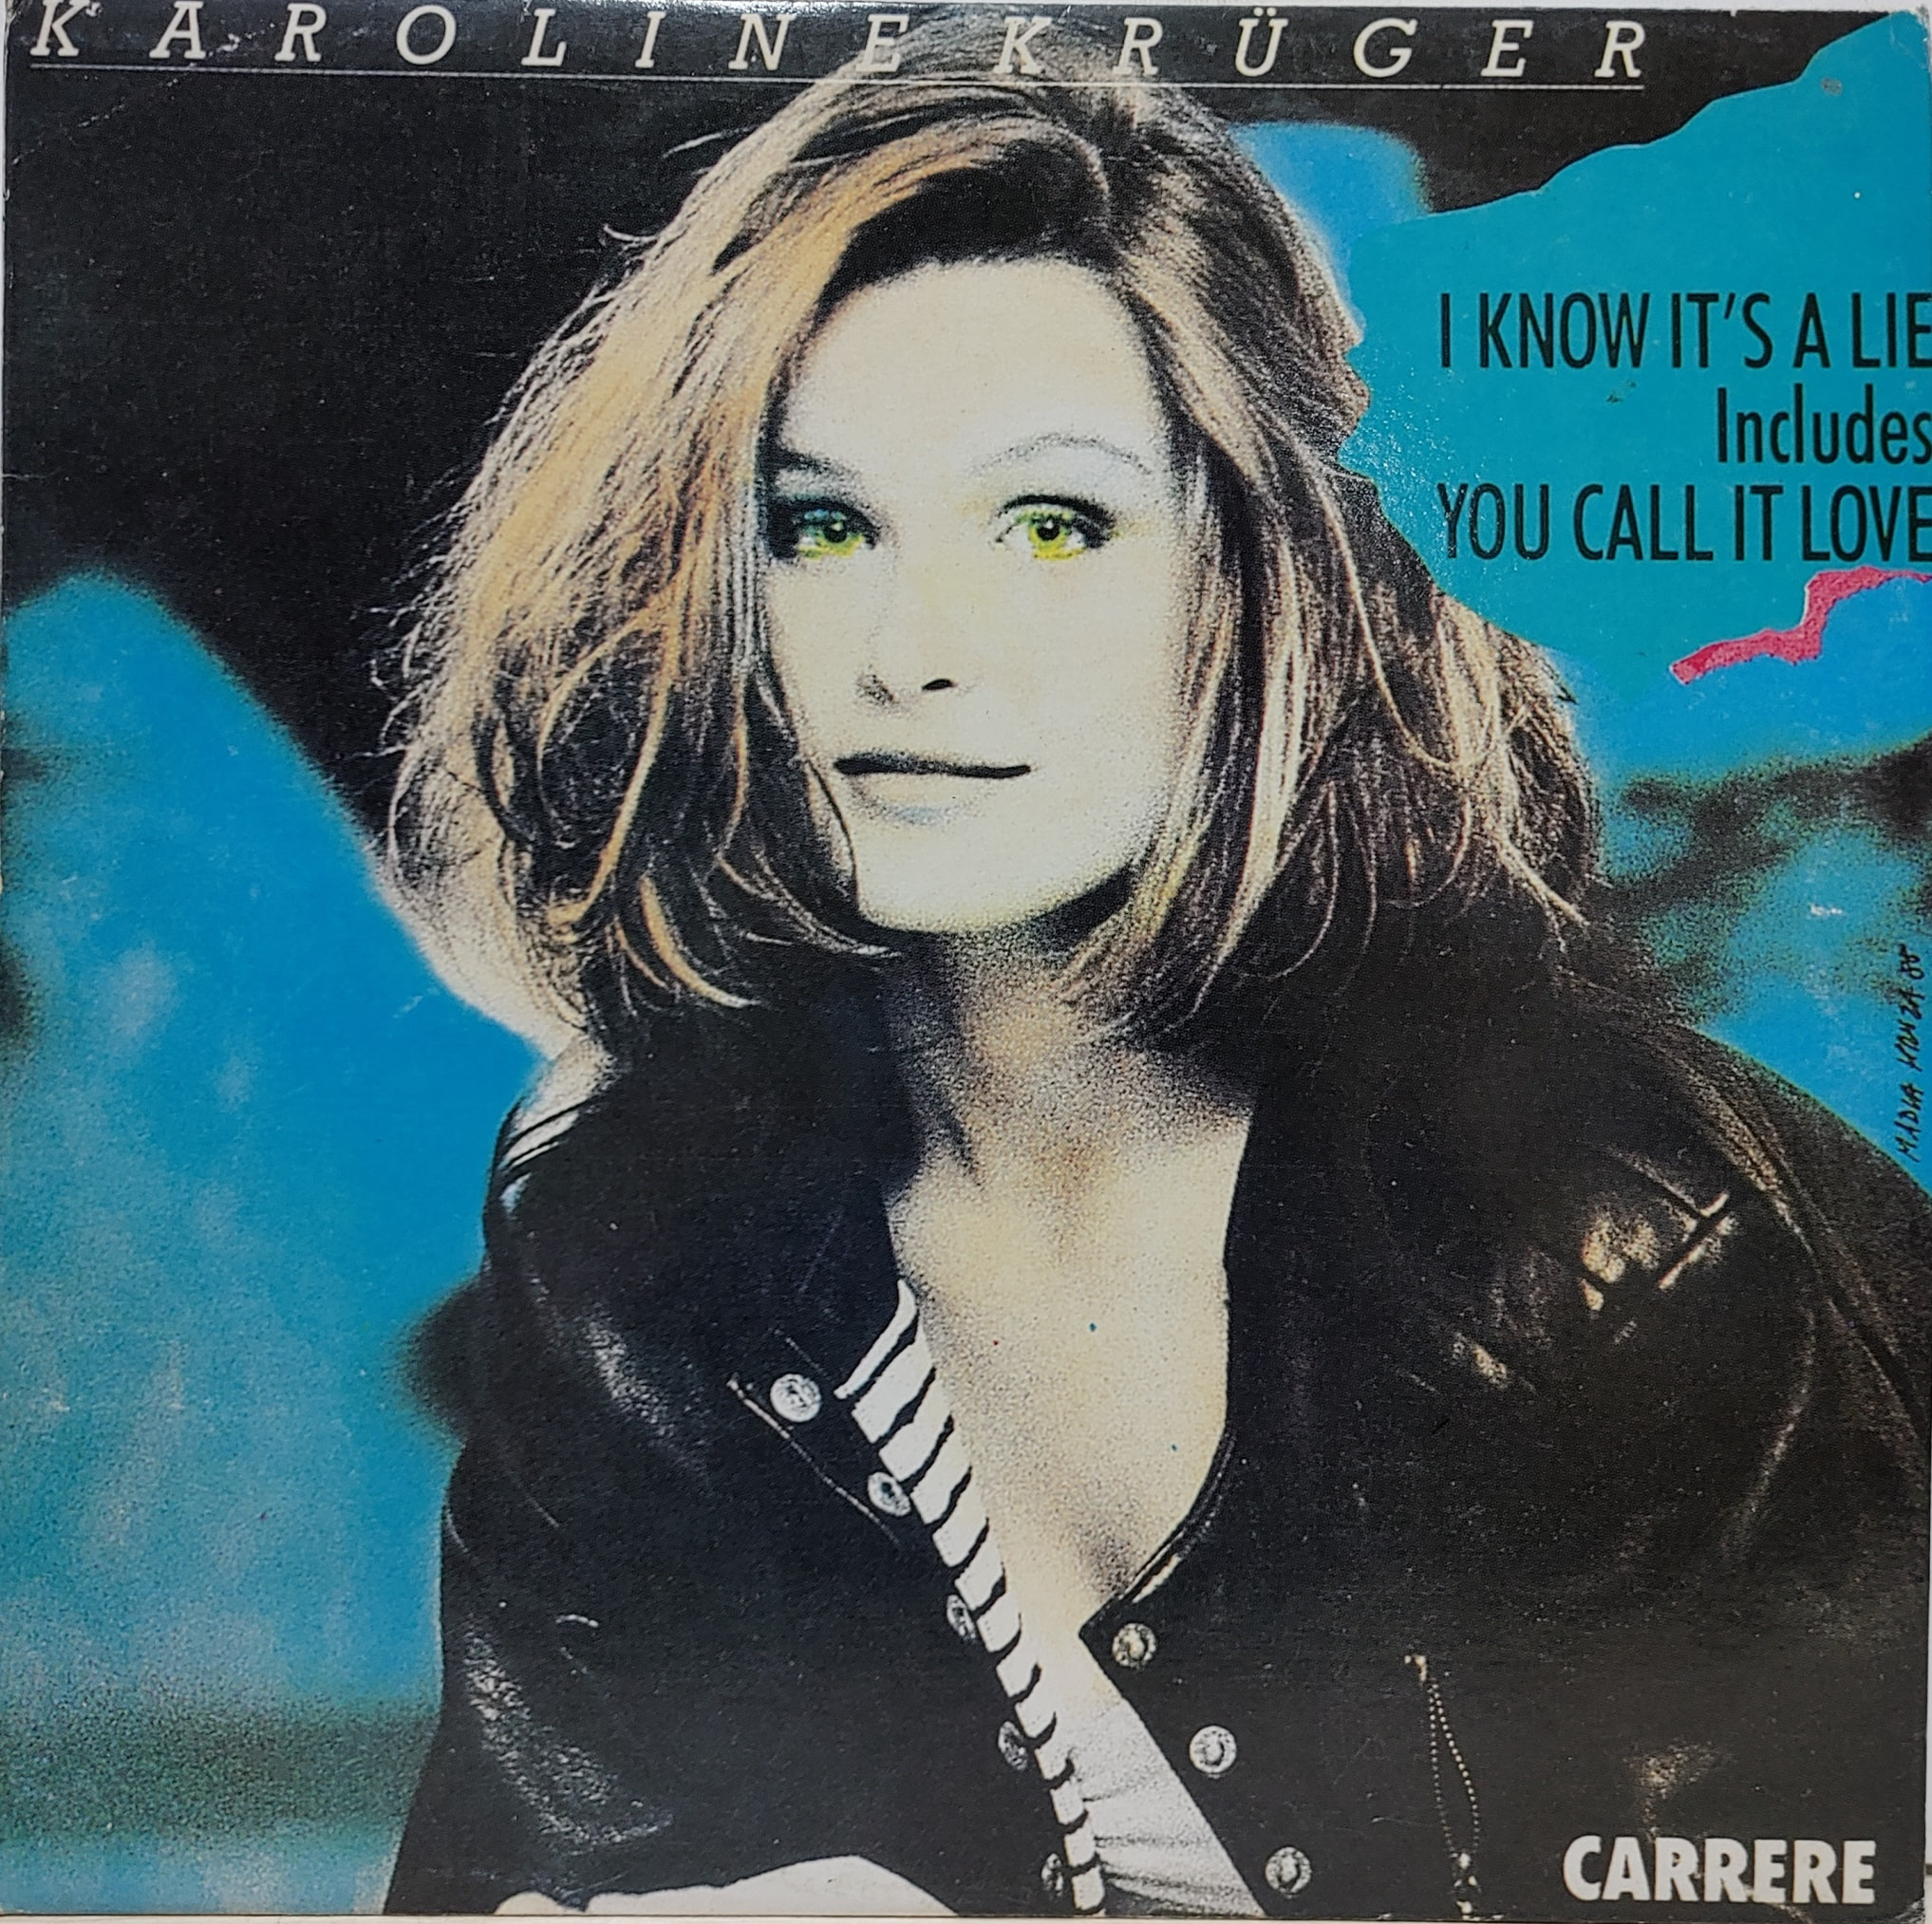 KAROLINE KRUGER / FASETTER